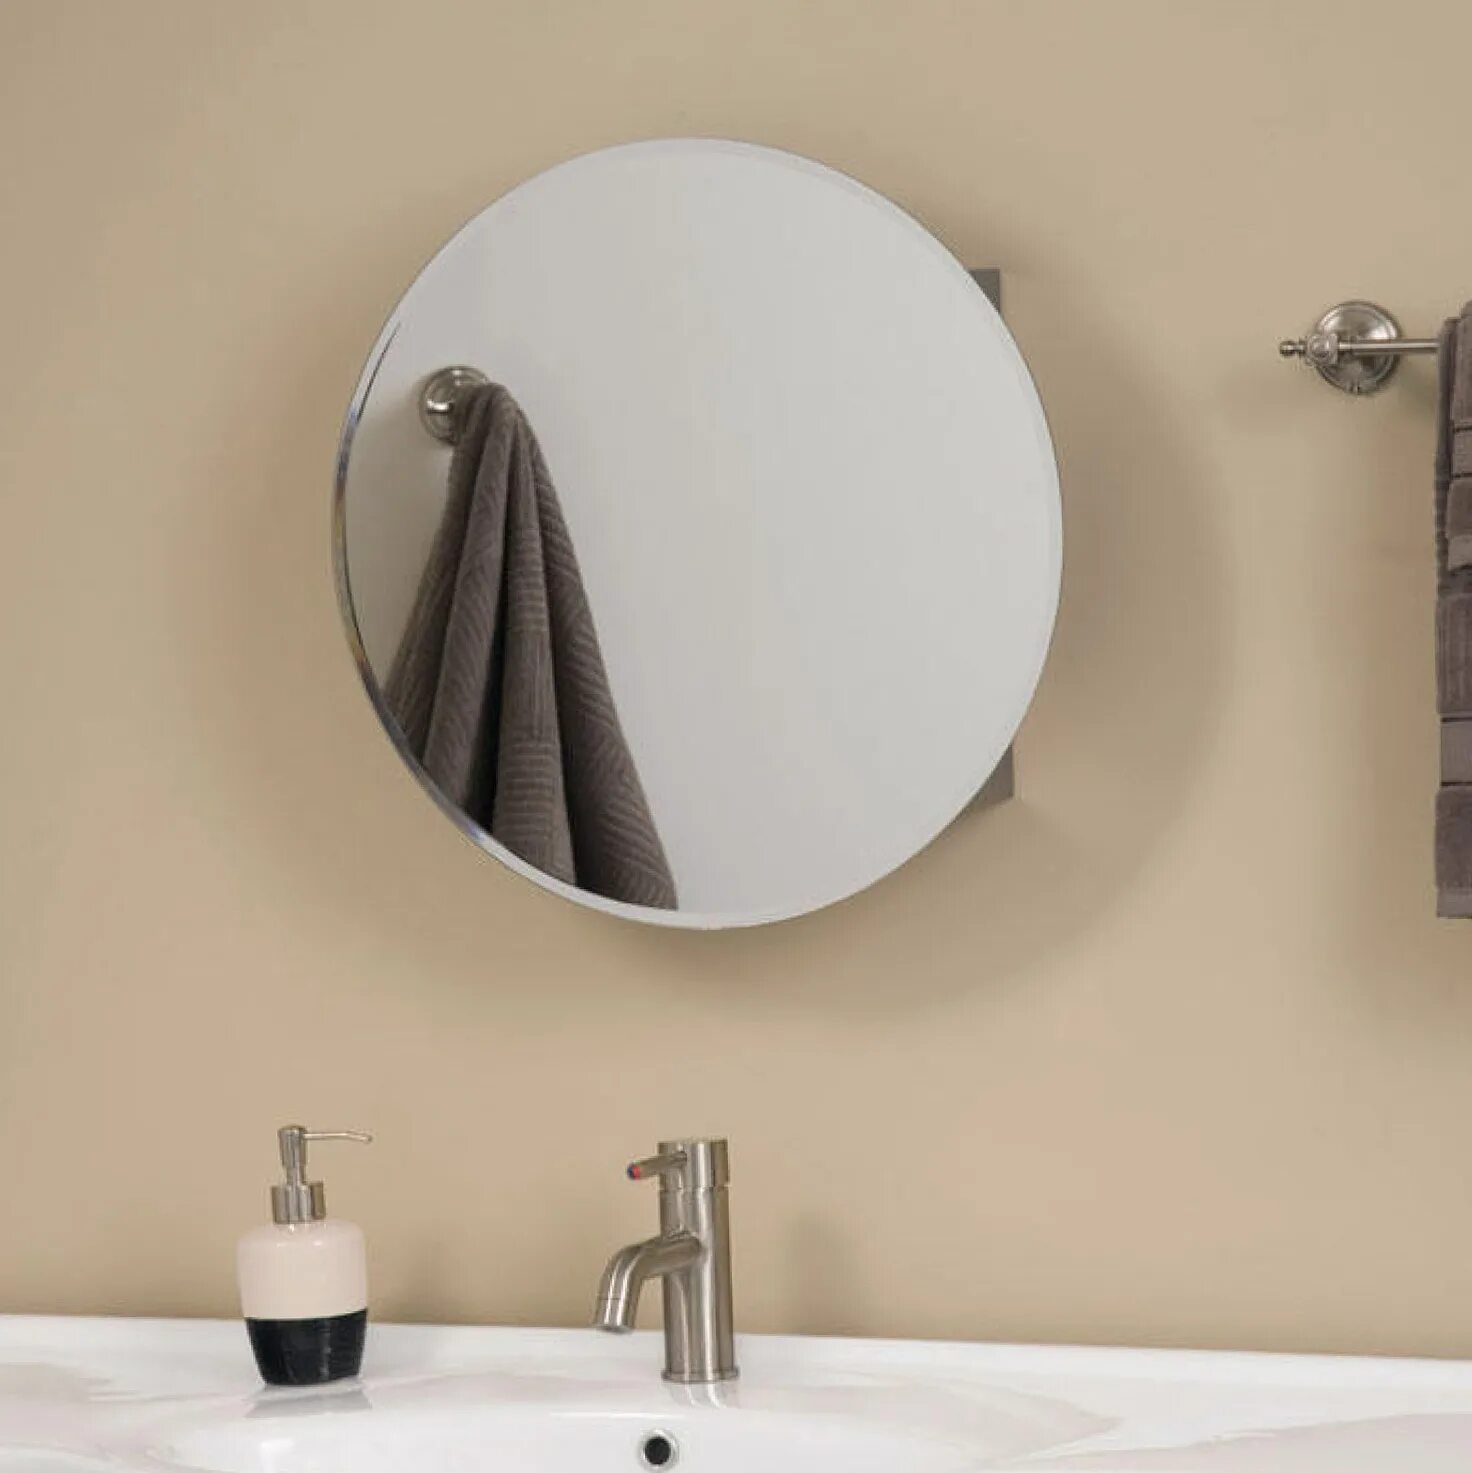 Подвесное зеркало для ванной. Зеркало в ванную. Круглое зеркало в ванную комнату. Зеркало круглое подвесное в ванную. Круглое зеркало с шкафчиком в ванную.